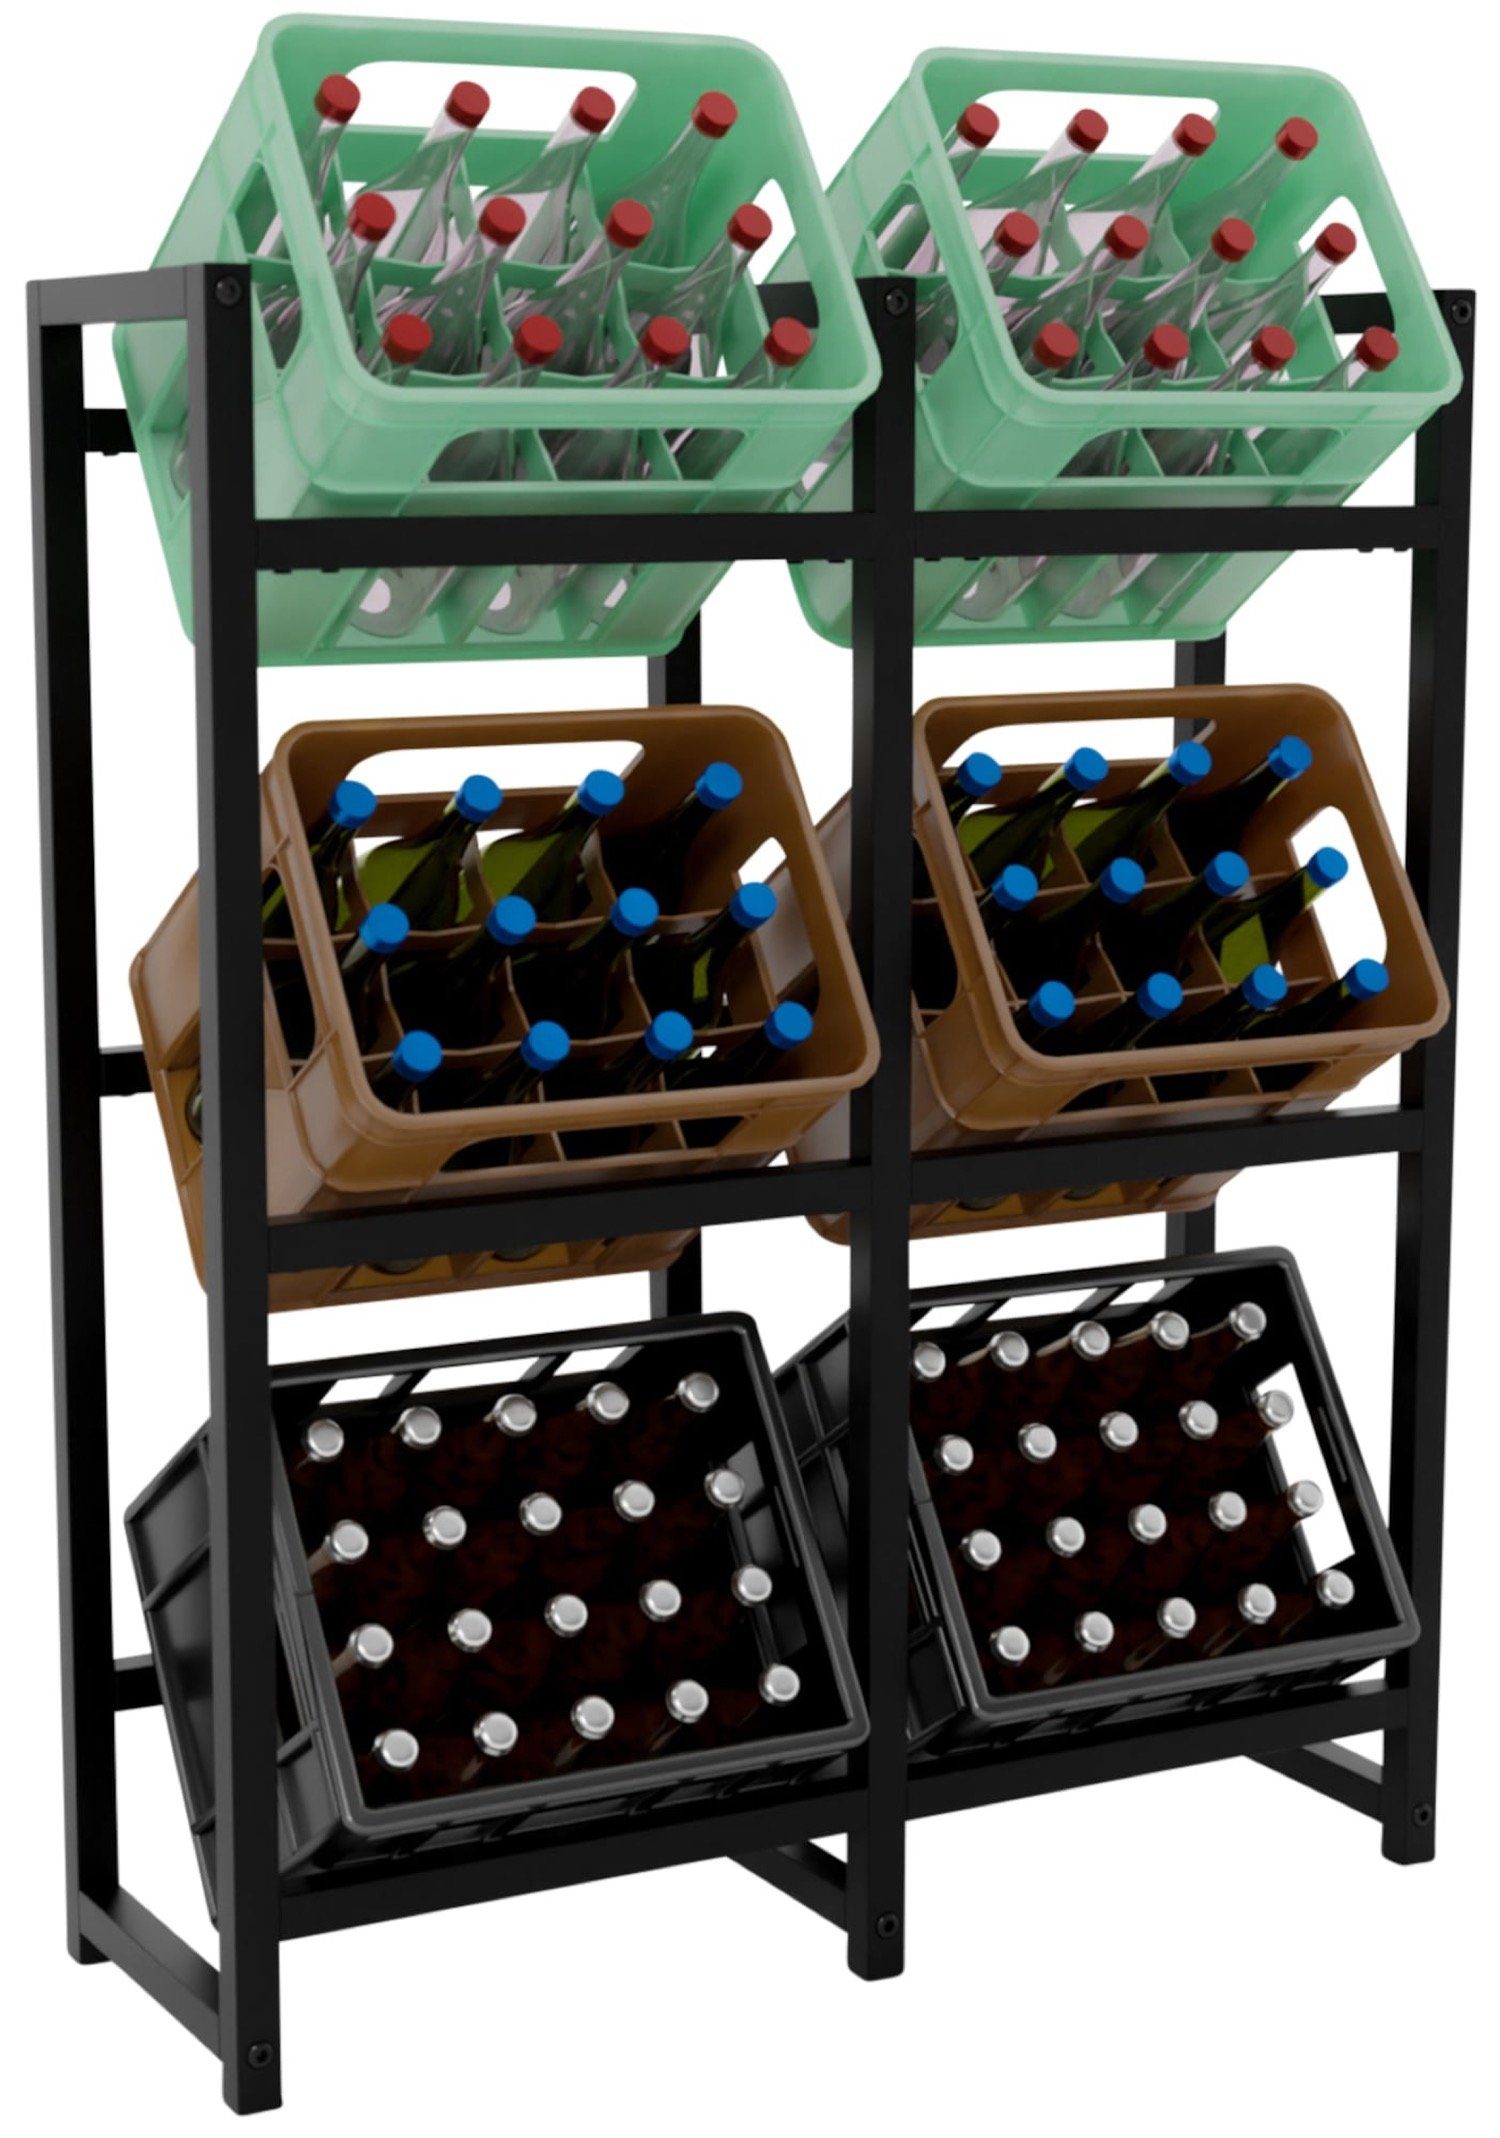 TPFLiving Standregal Getränkekistenständer Star - Getränkeregal für 6 Kisten in schwarz, Kastenständer für Getränkekisten - Flaschenregal, Getränkekistenregal mit den Maßen (HxB xT): 116 x 91 x 31 cm